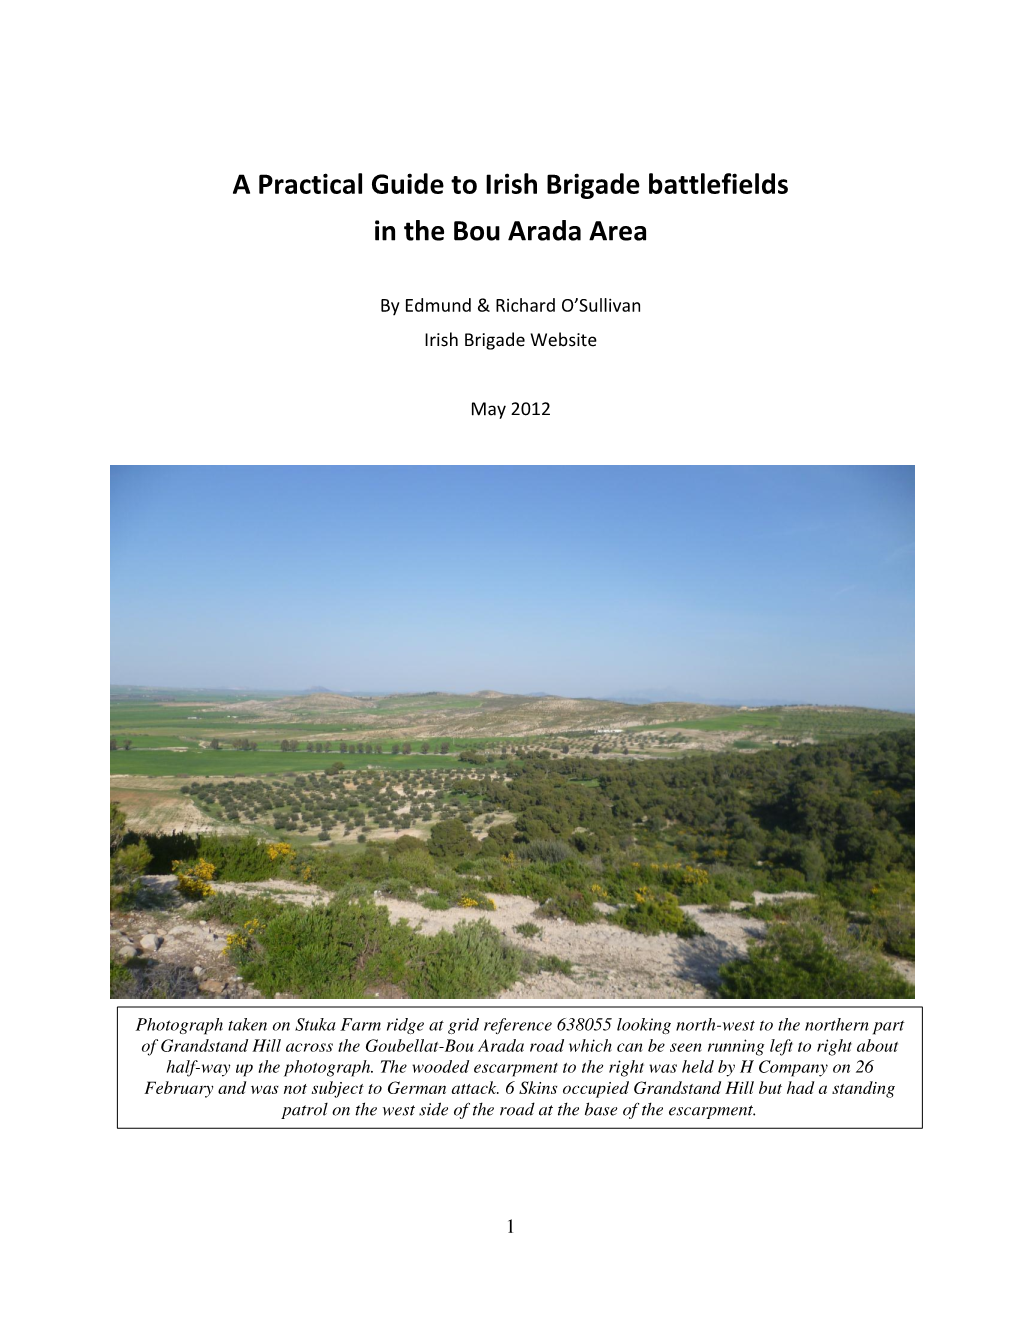 A Practical Guide to Irish Brigade Battlefields in the Bou Arada Area